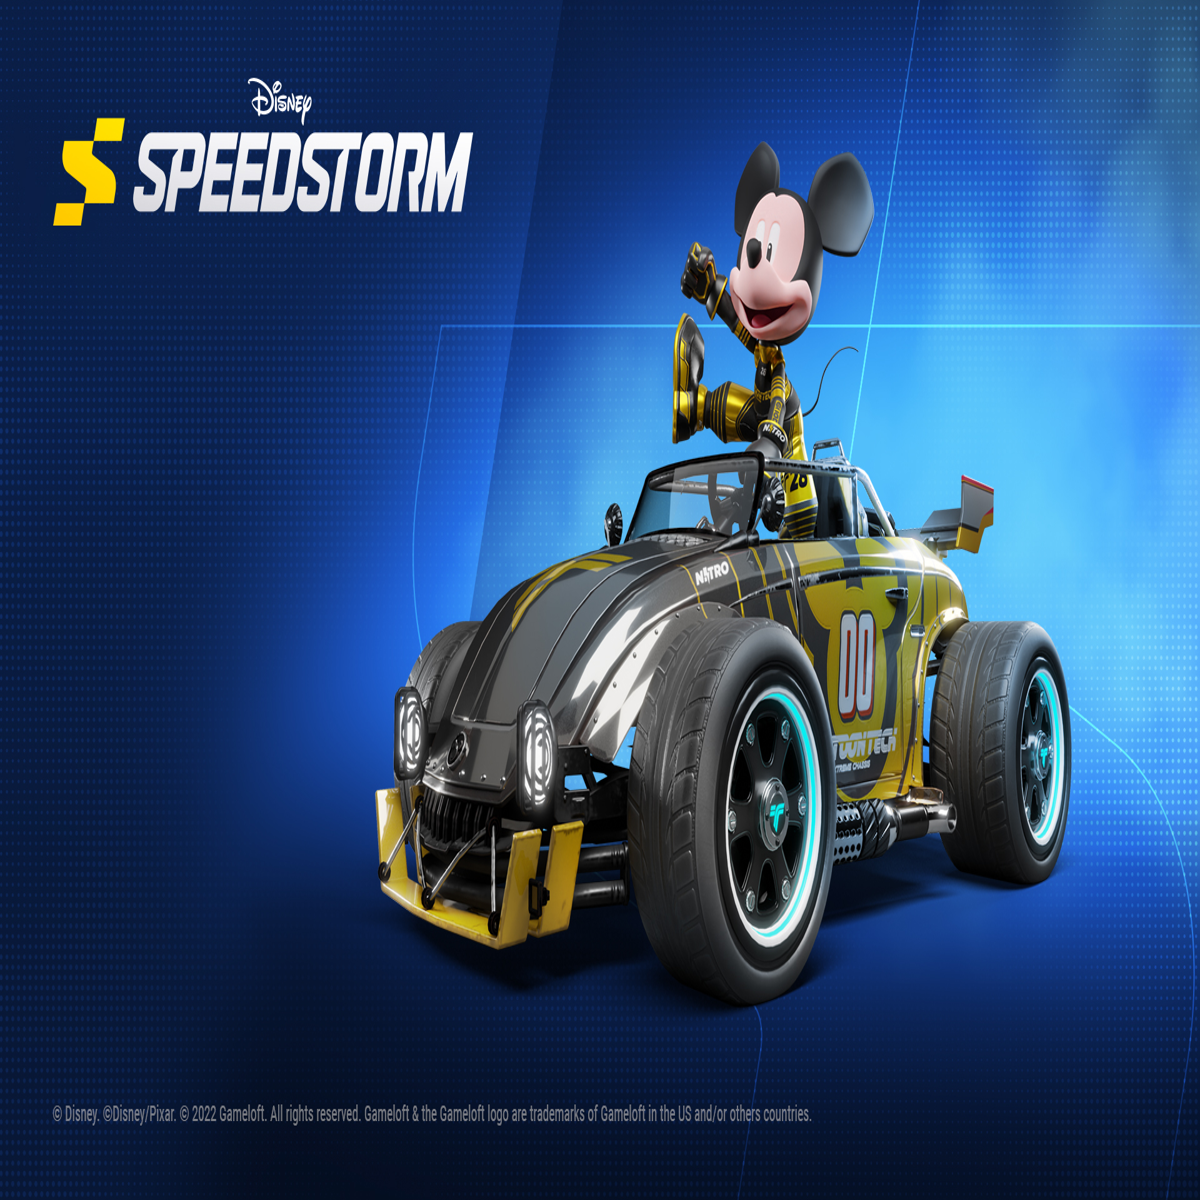 Disney Speedstorm, jogo de corrida gratuito, é anunciado para